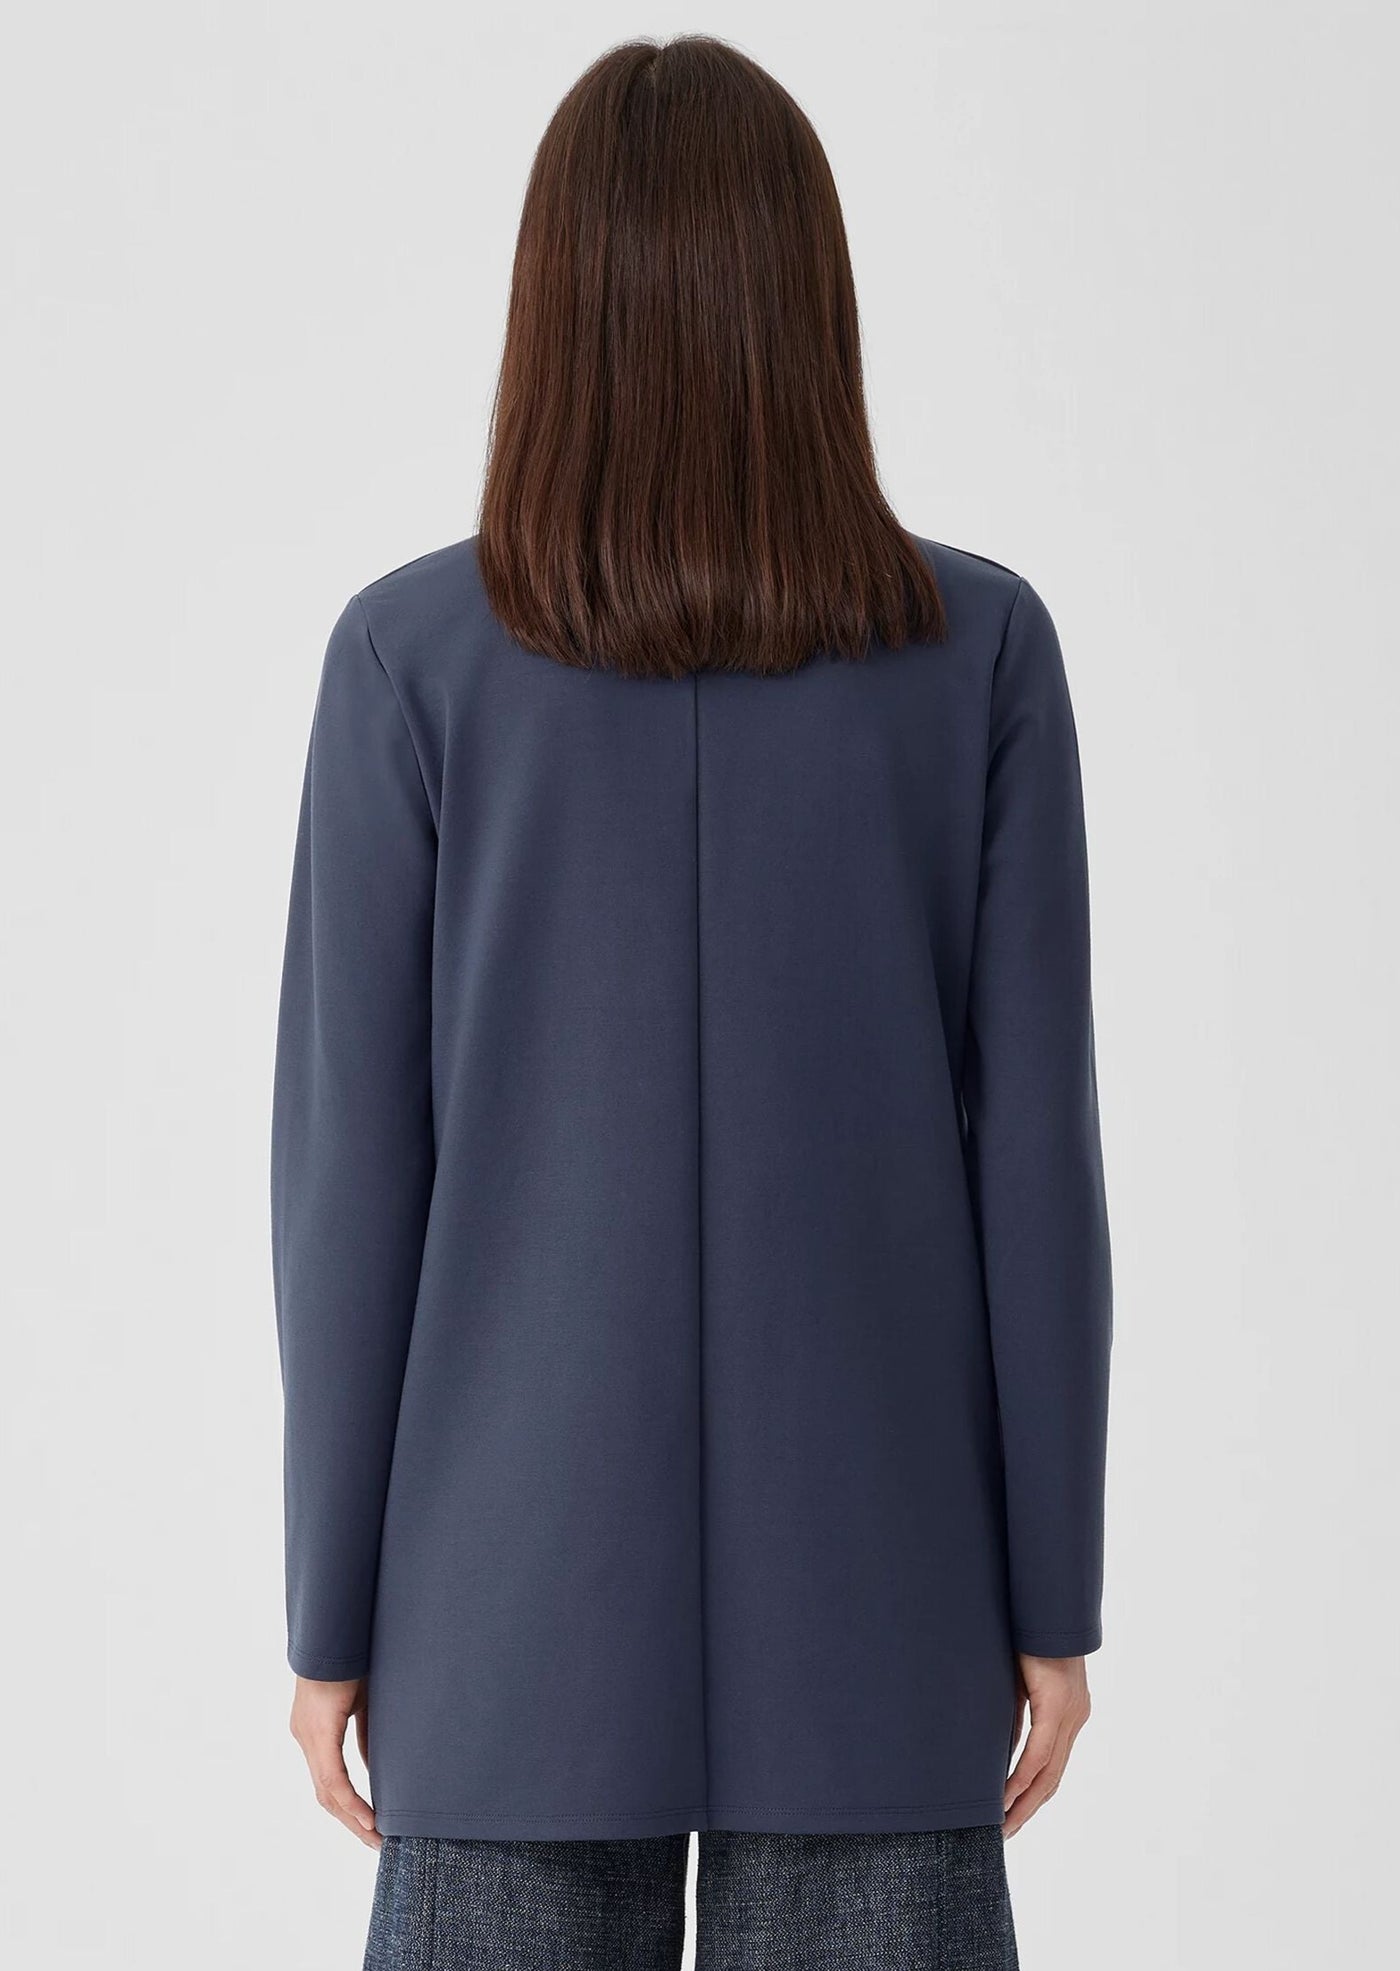 Eileen Fisher - High Collar Long Jacket